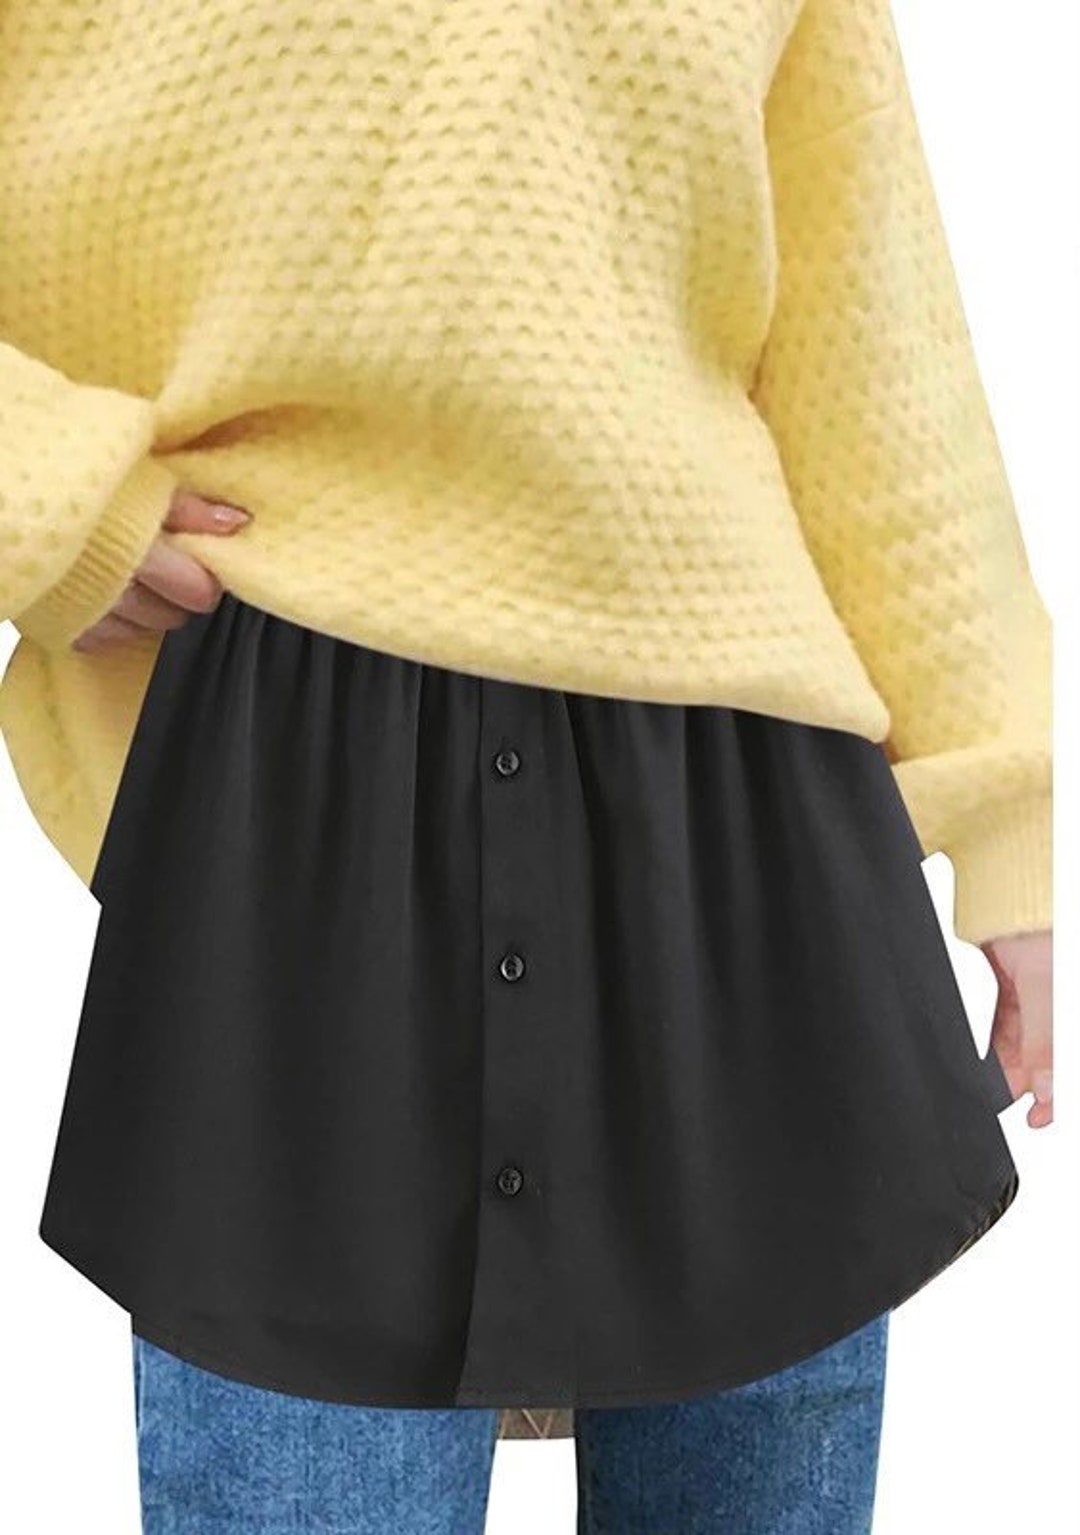 Jupon détachable, rallonge de chemise pour femme irrégulière fausse jupe  queue chemisier ourlet plaid mini jupe rallonge ourlet -  Canada